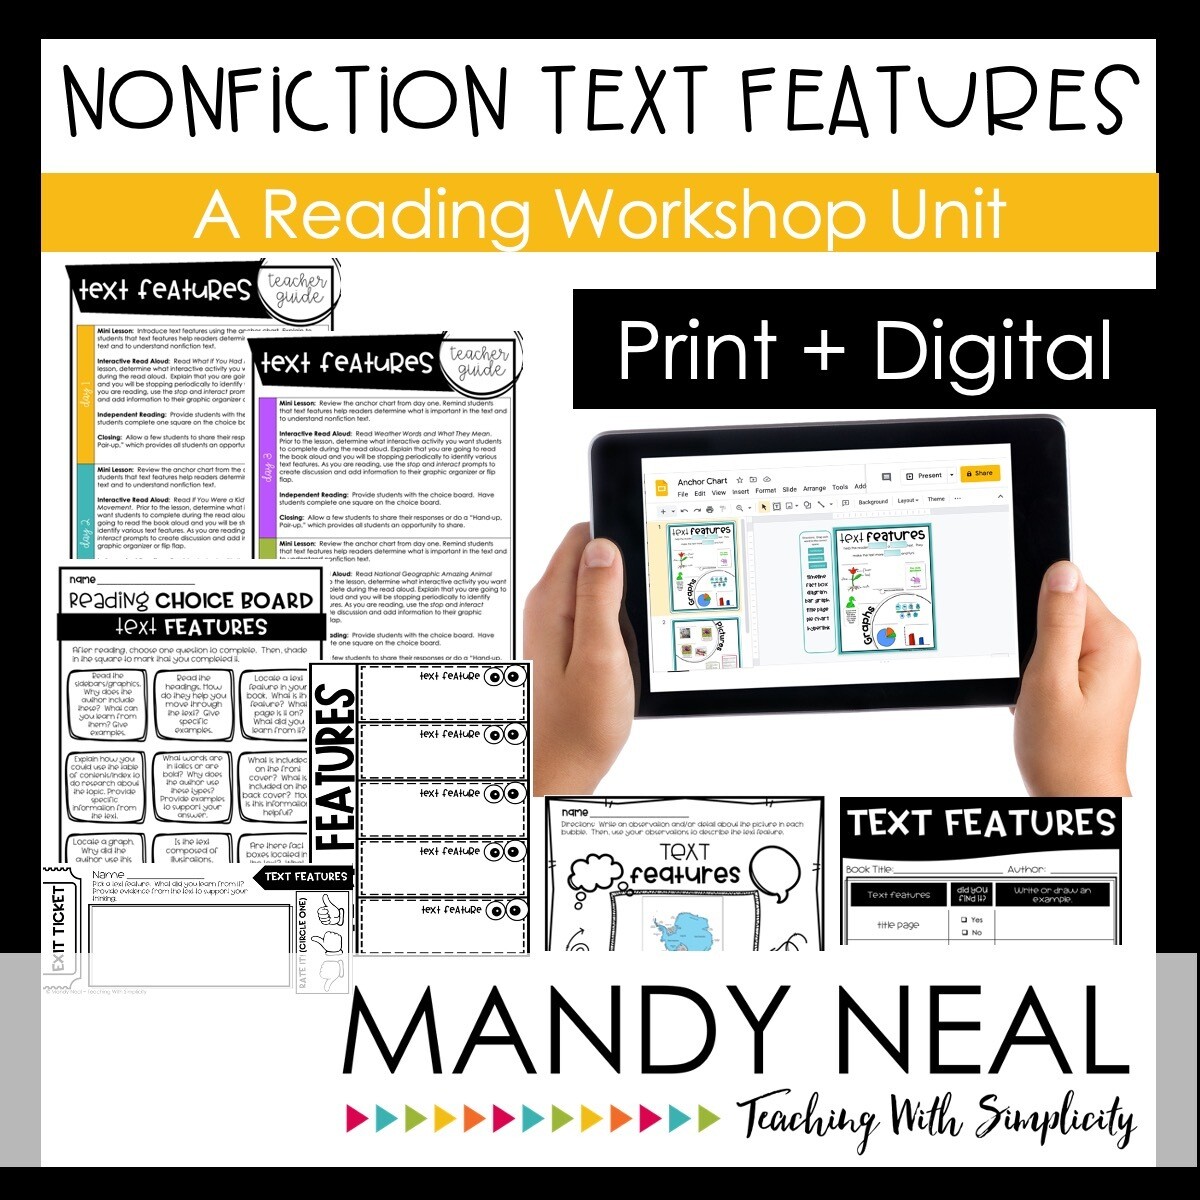 Nonfiction Text Features Reading Workshop Unit | Print + Digital